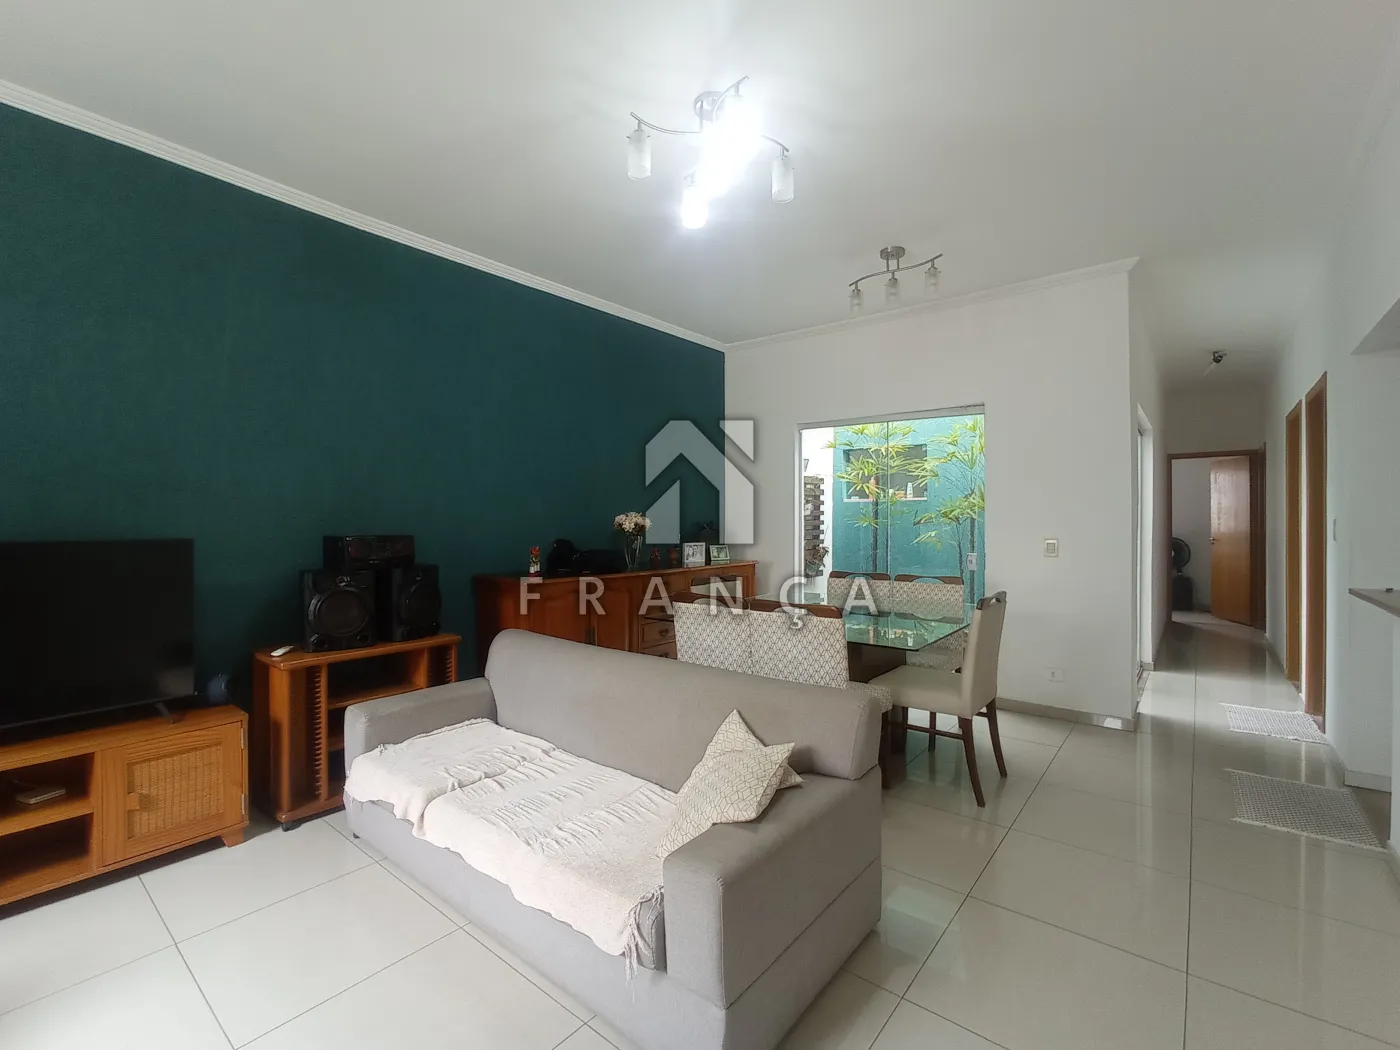 Alugar Casa / Padrão em Jacareí R$ 3.700,00 - Foto 5